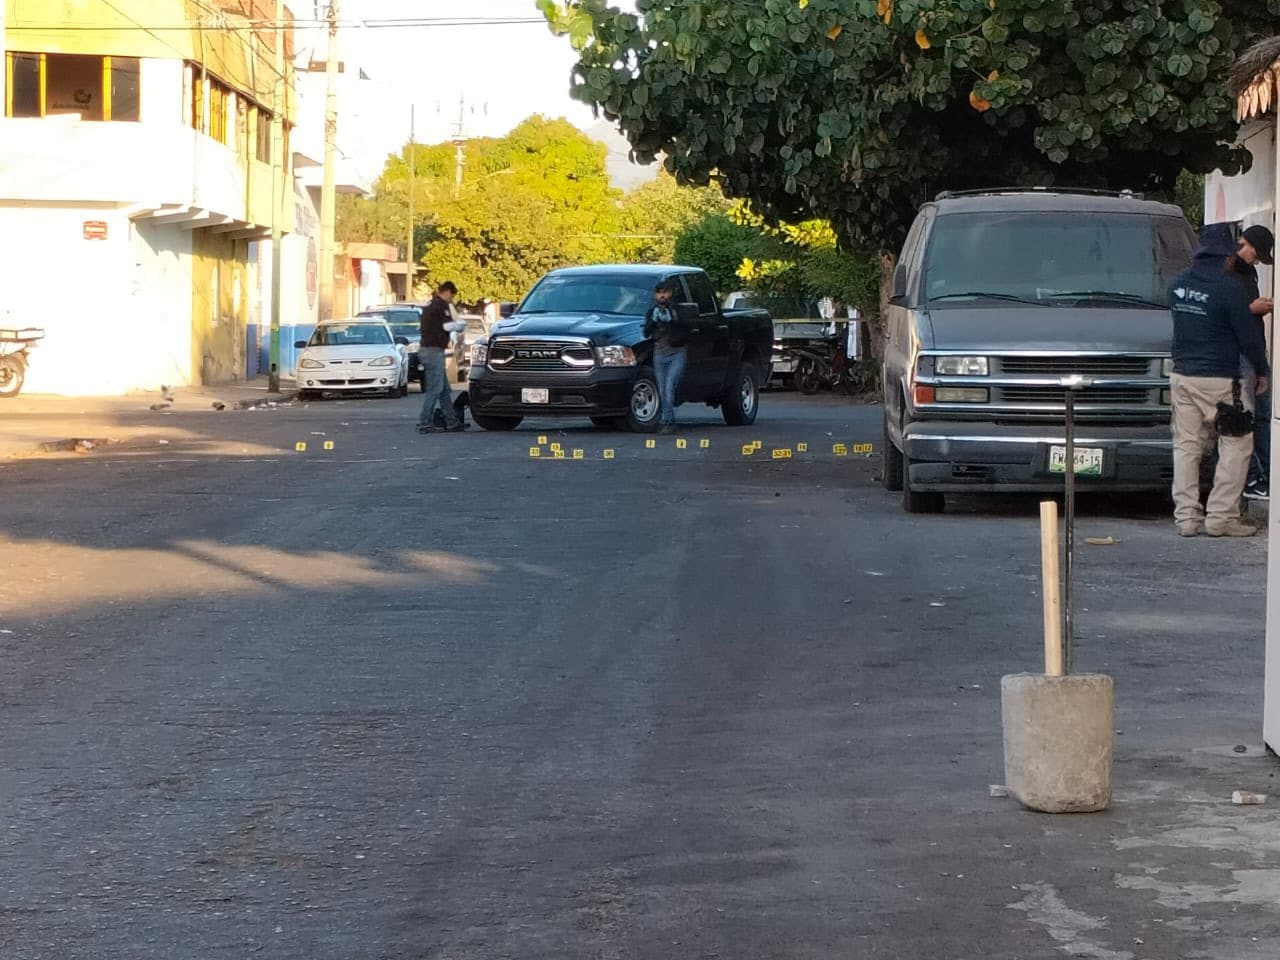 Alerta en Colima por balaceras y hechos violentos durante tres días consecutivos